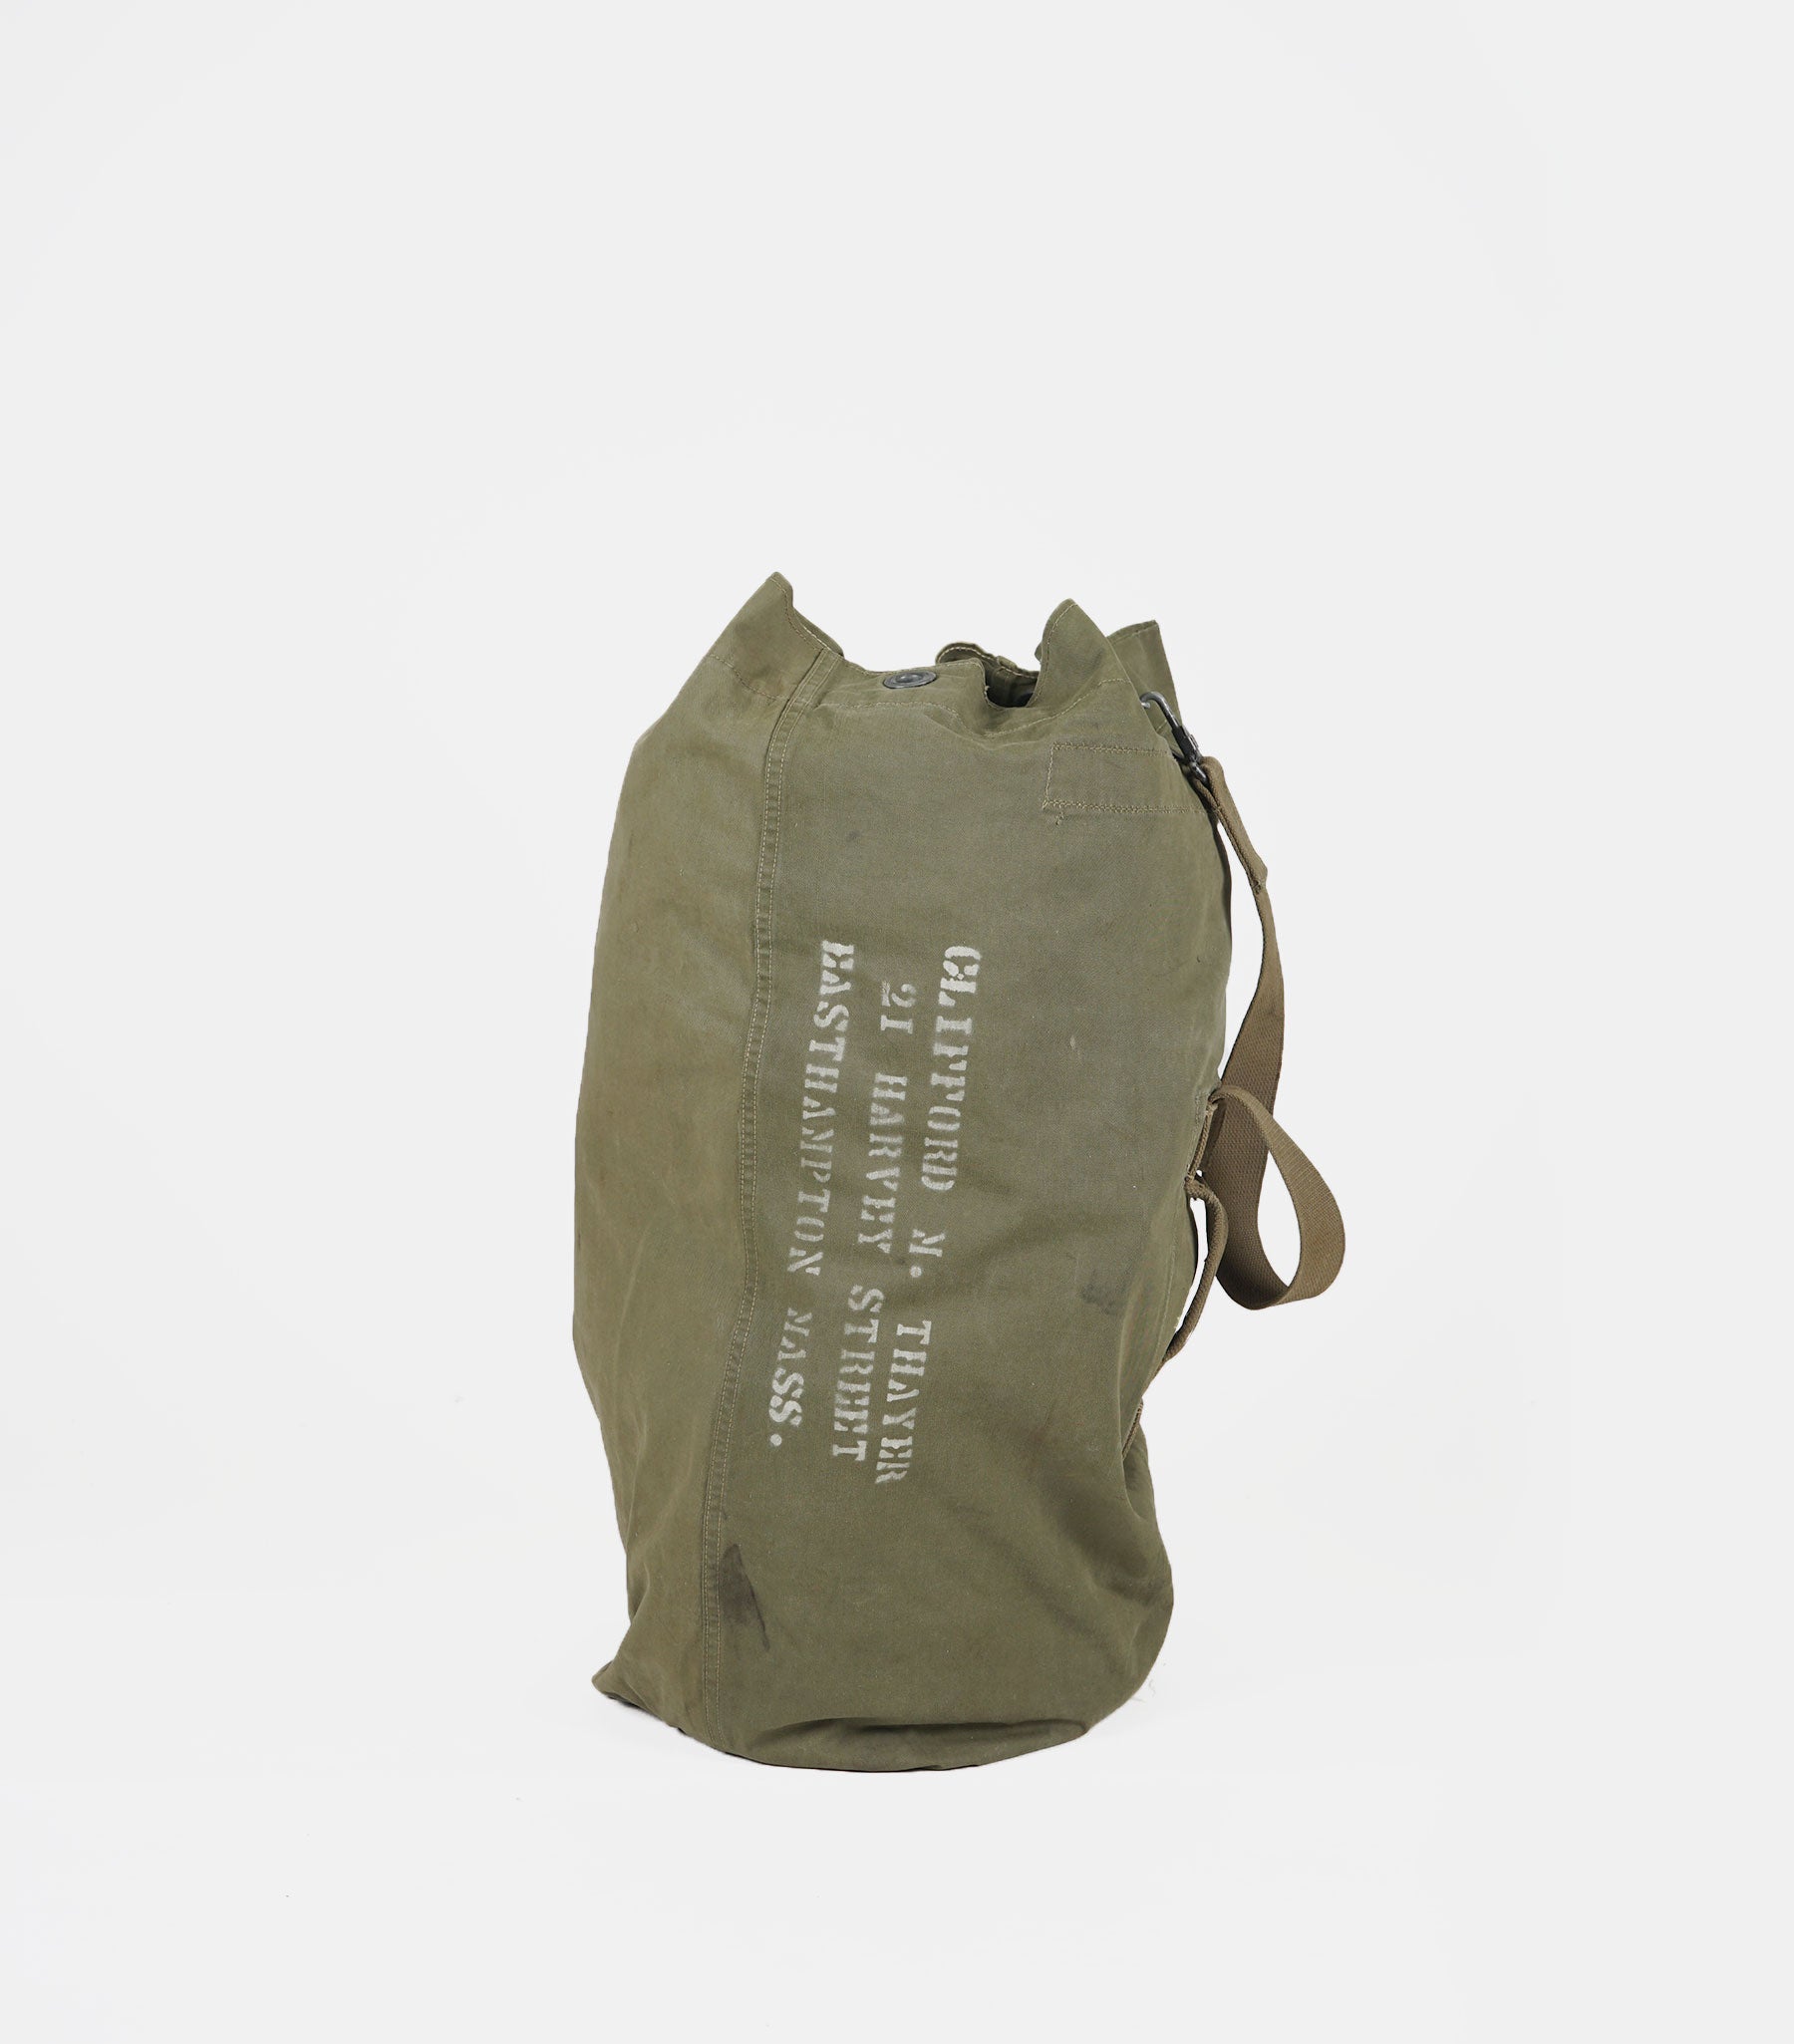 1960's-1970's Vietnam War Duffle Bag